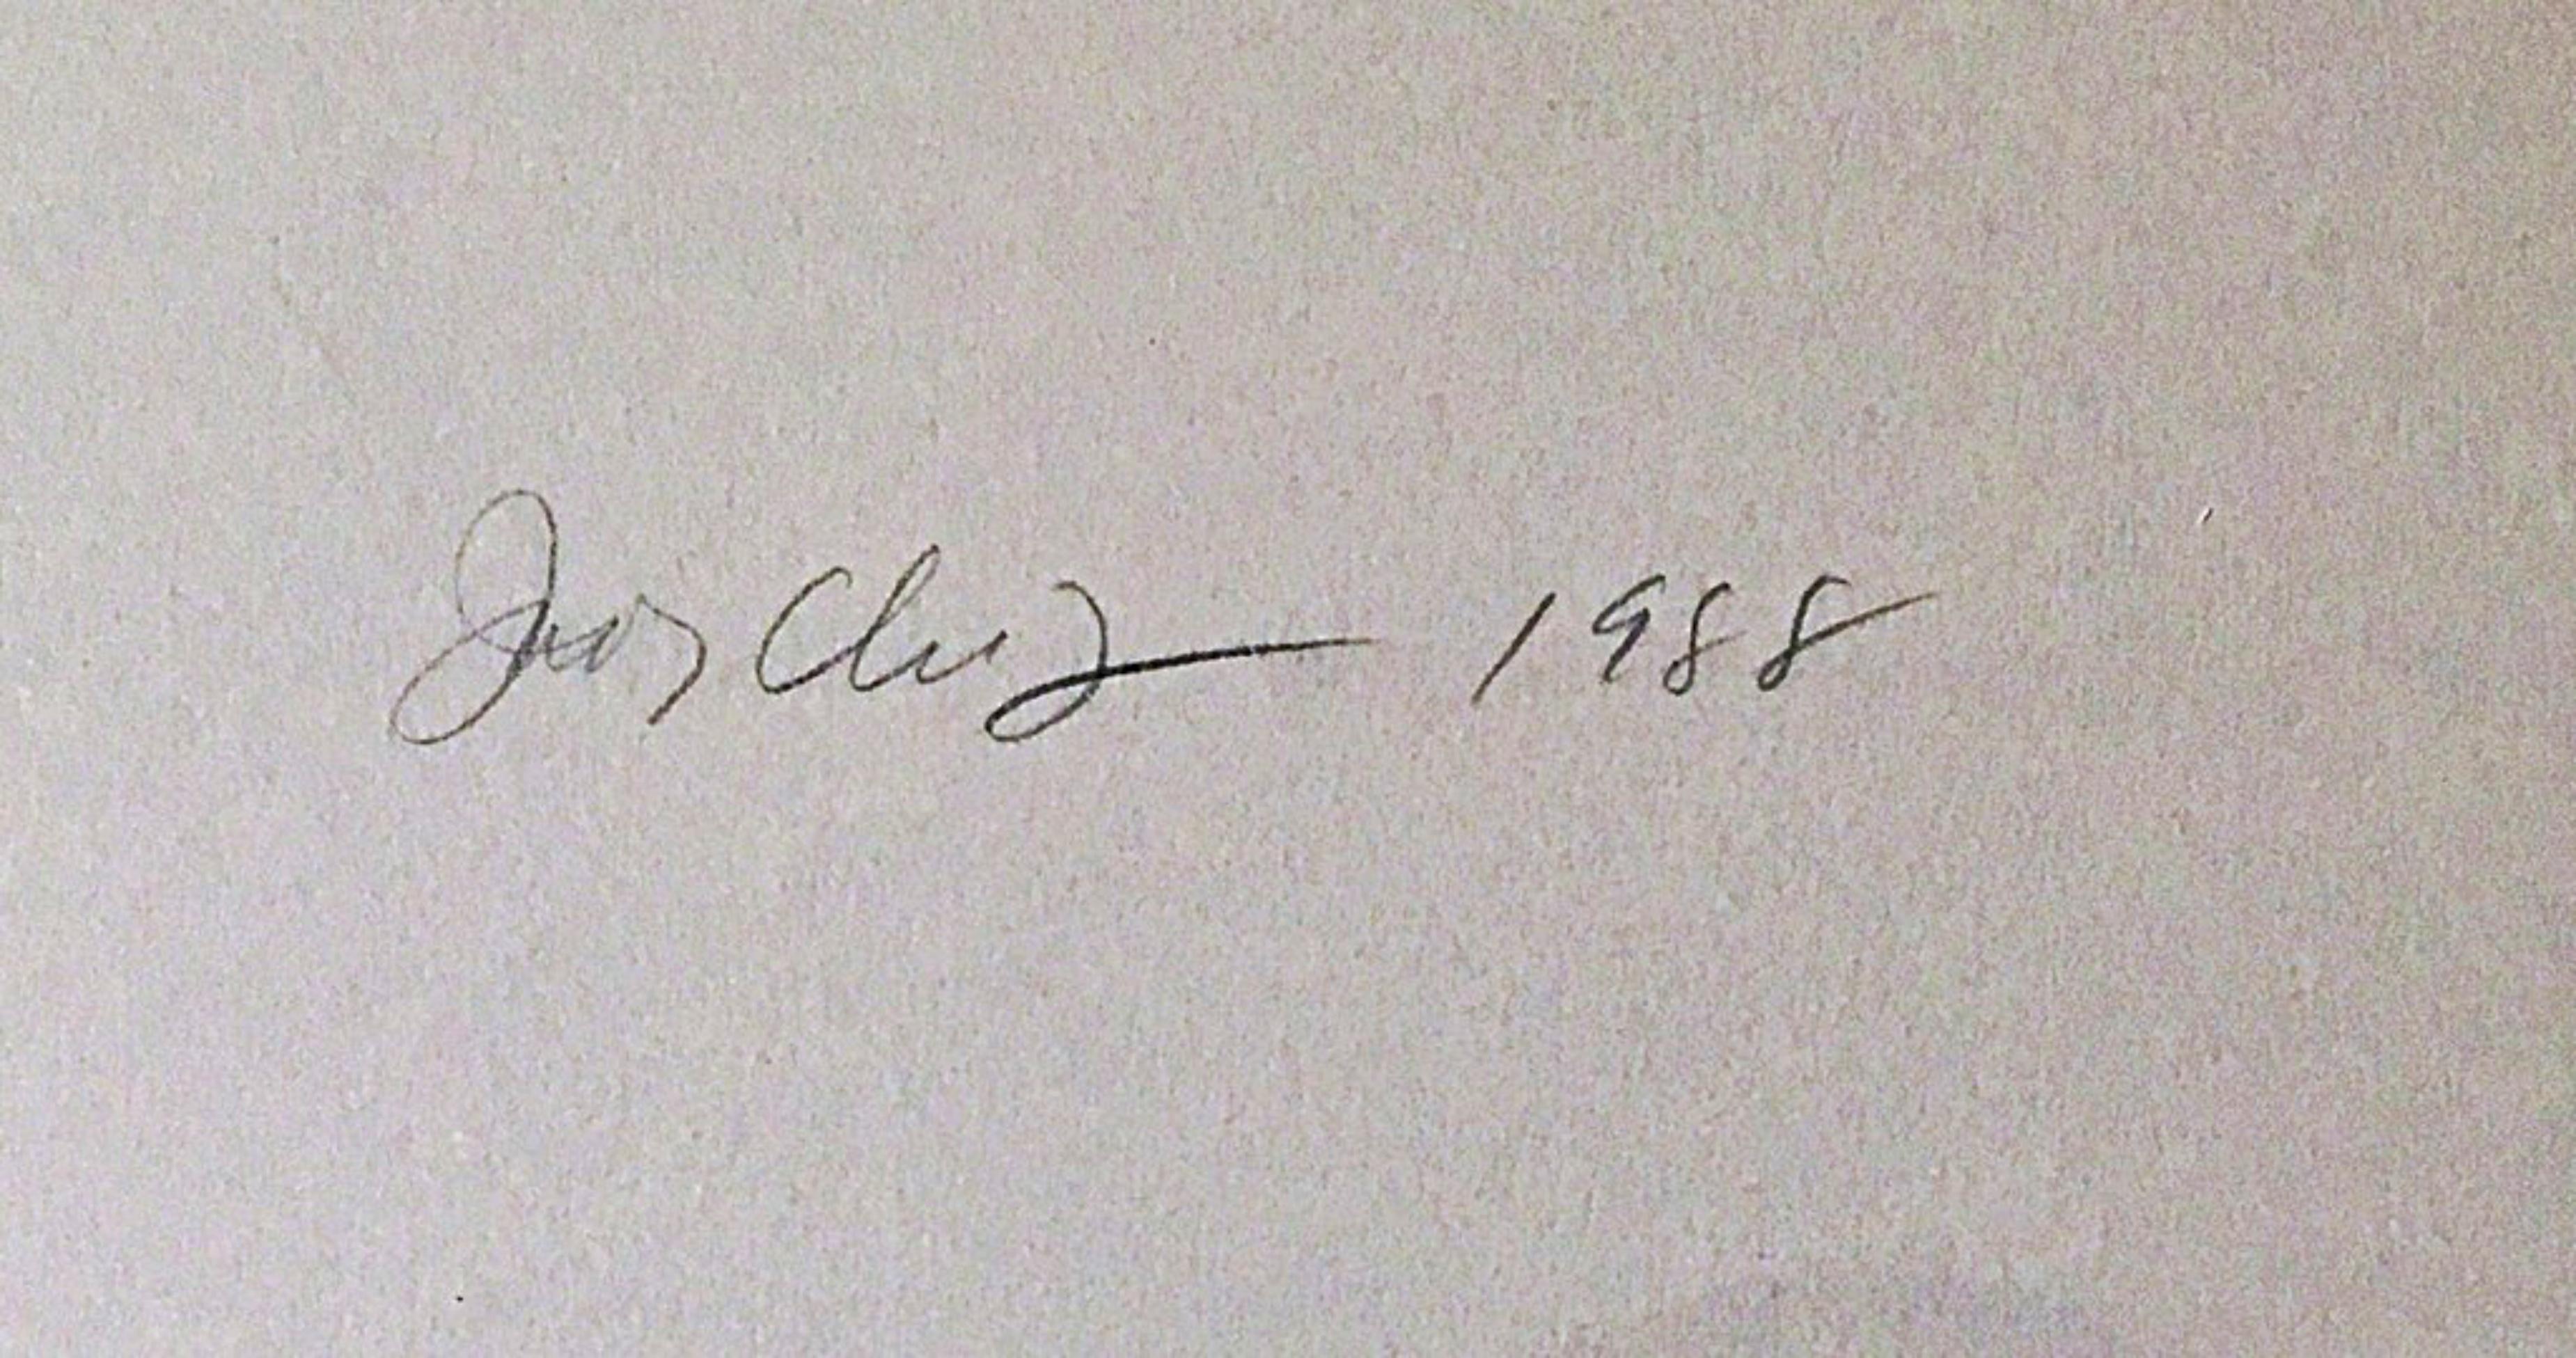 Judy Chicago
Die Welt in den Untergang treiben, 1988
Siebdruck auf Velinpapier 
Mit Bleistift signiert, betitelt, datiert und nummeriert 35/50 auf der Vorderseite
Zu diesem Werk gehört auch ein eleganter, handgefertigter Holzrahmen.